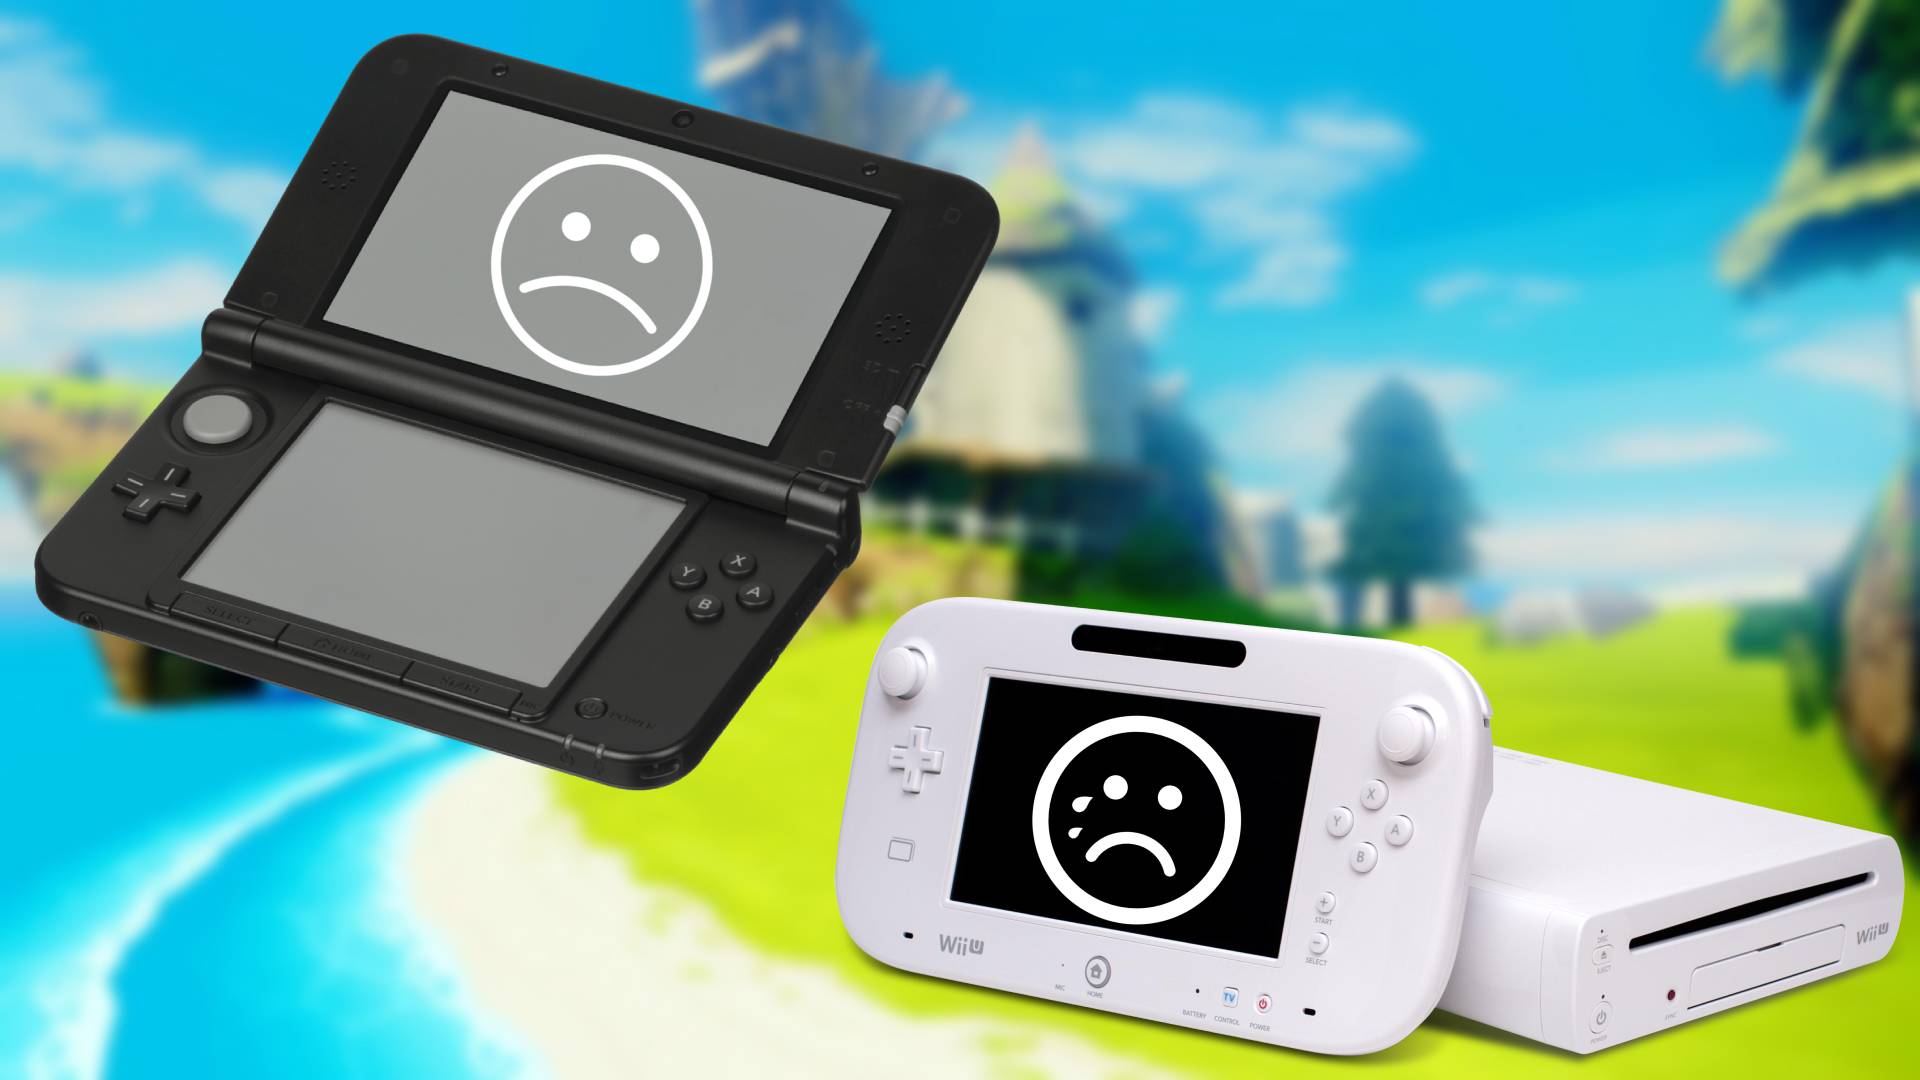 Nintendo announces the closure of the Nintendo 3DS and Wii U eShop